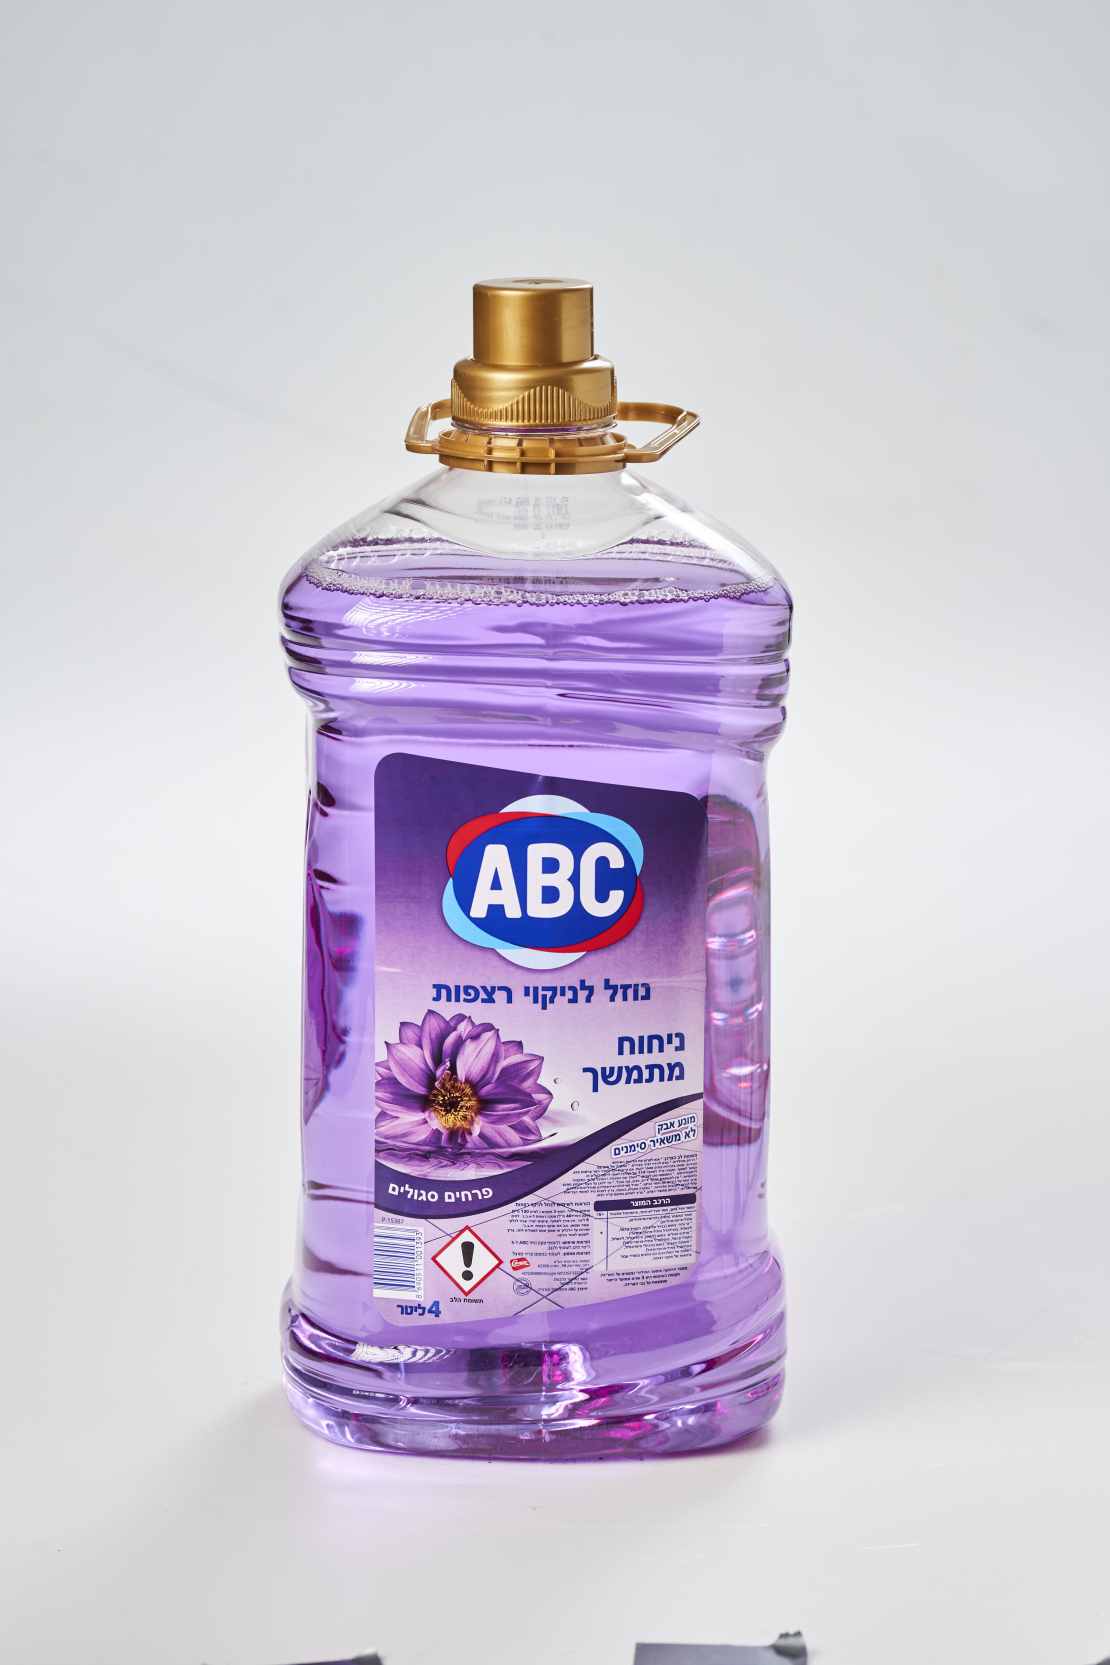 נוזל לניקוי רצפות בניחוח פרחים סגולים- ABC